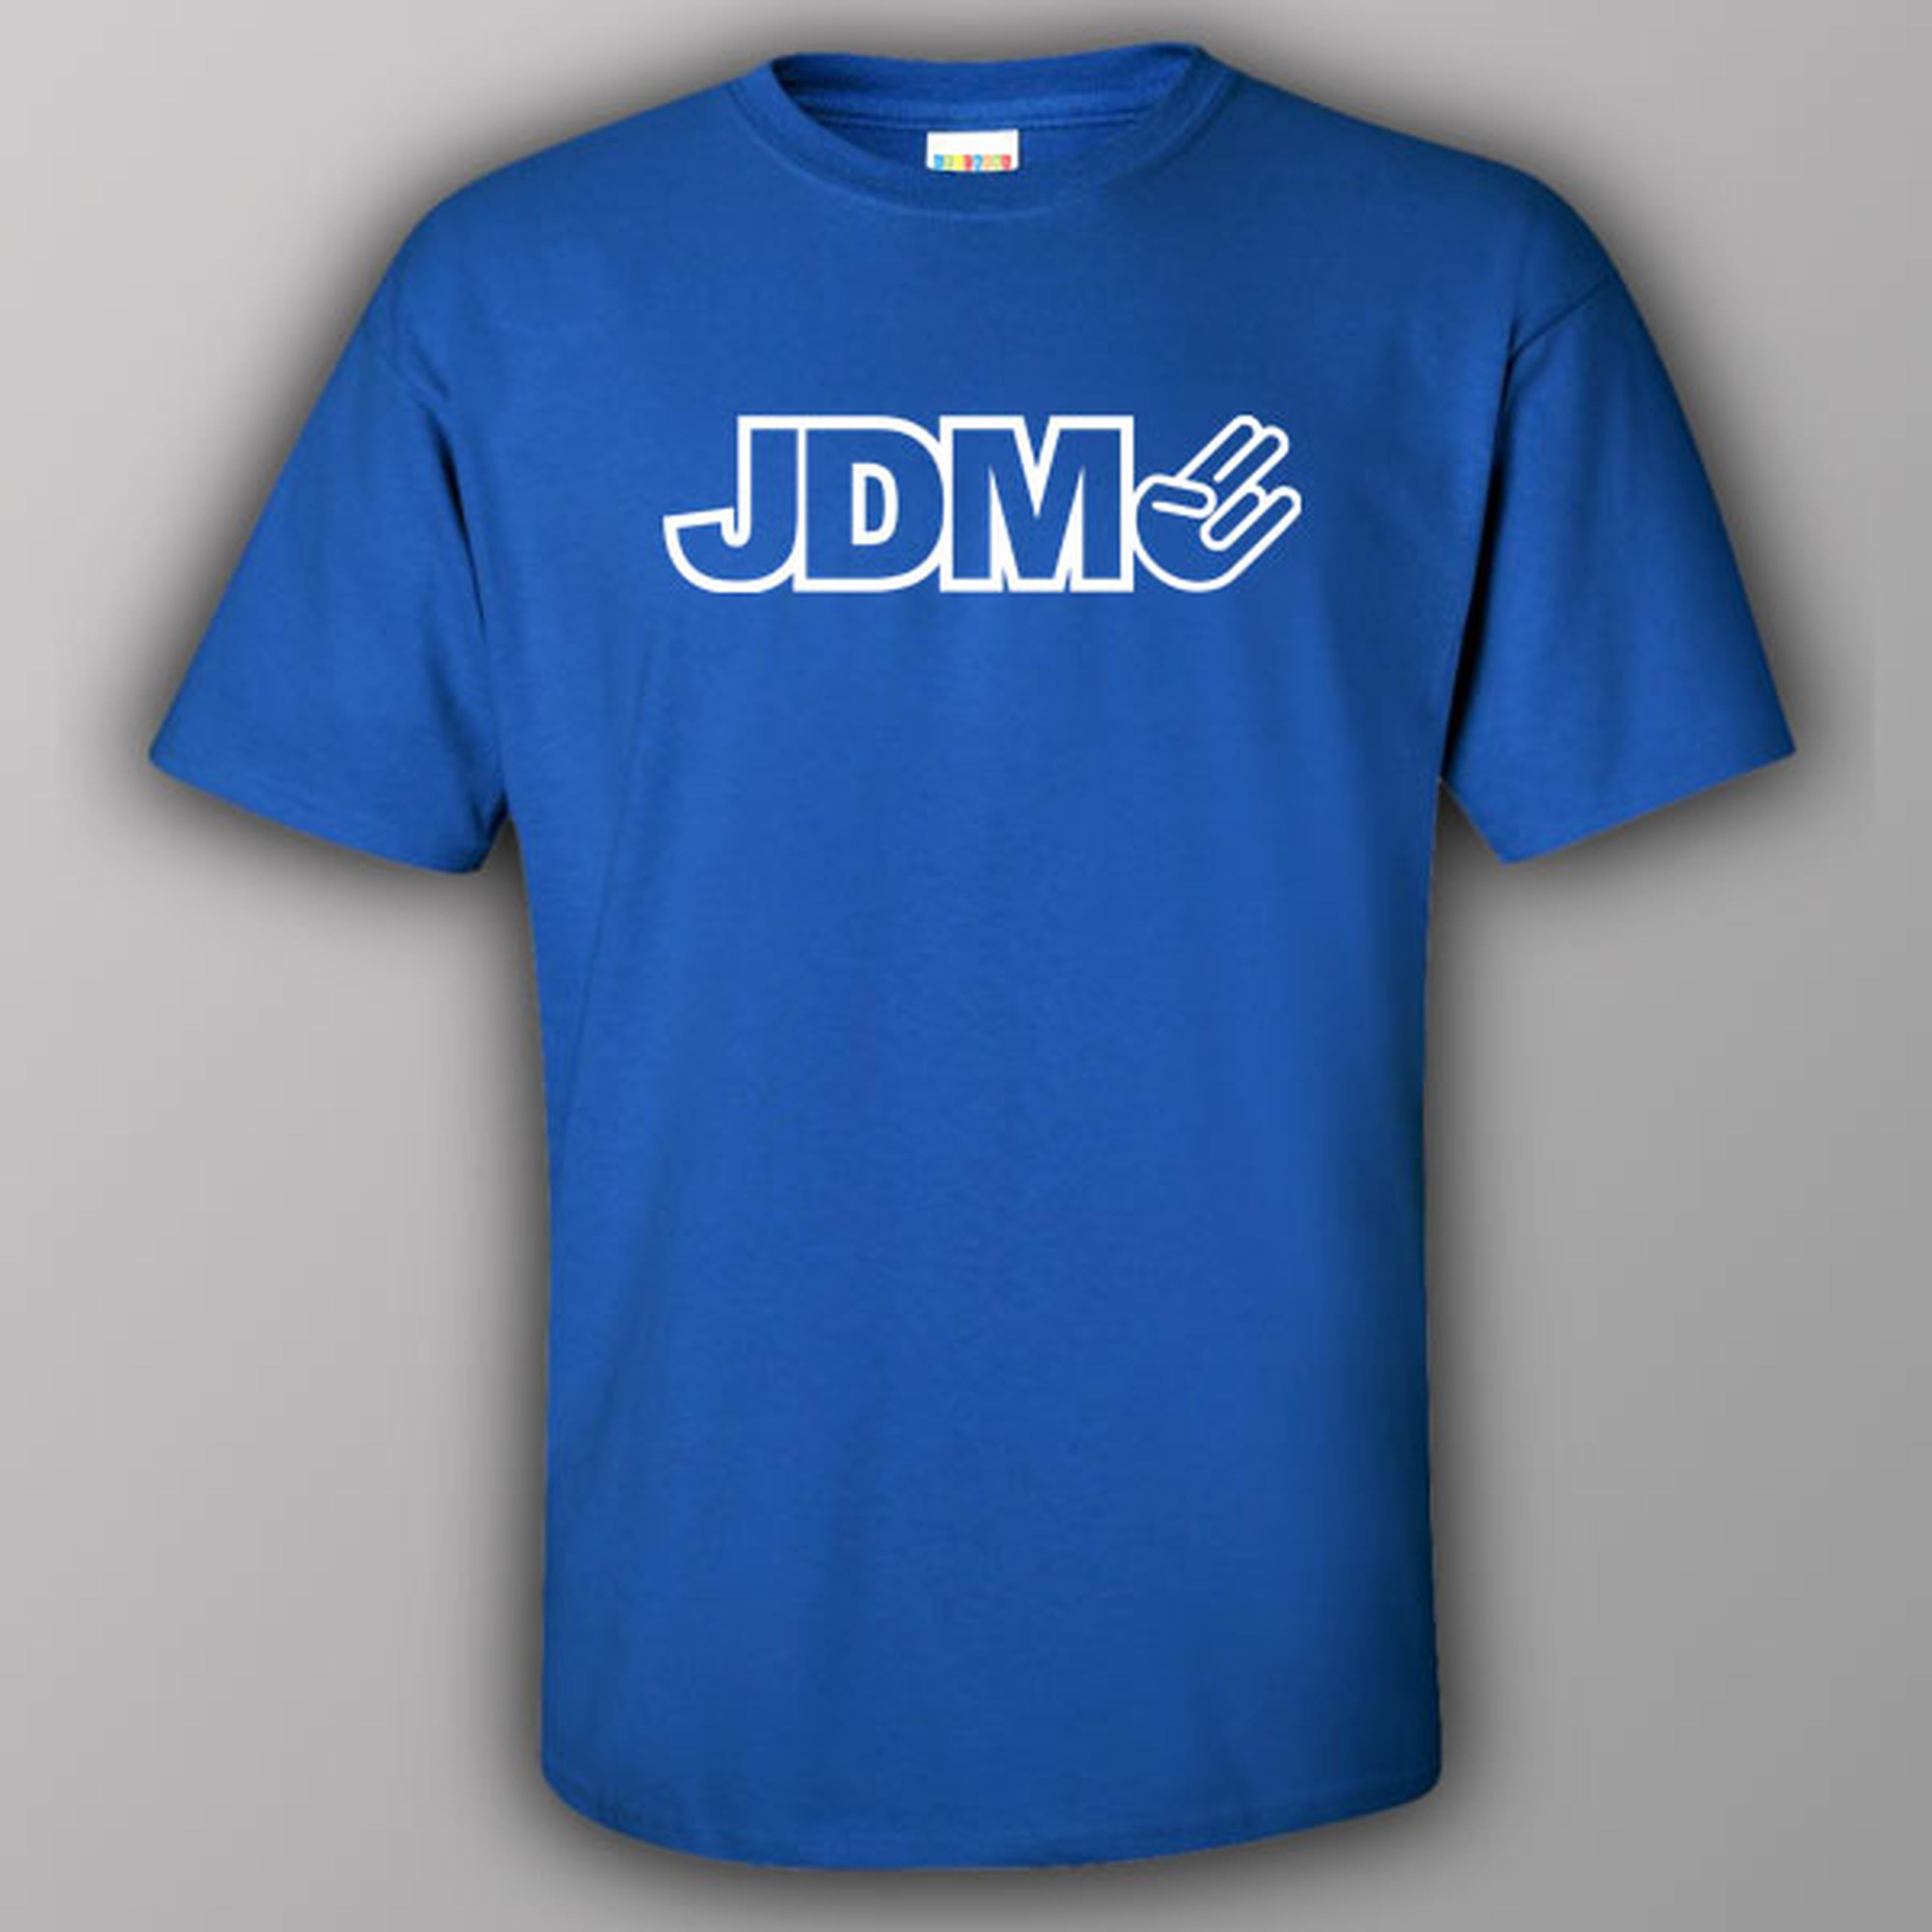 jdm-2-t-shirt